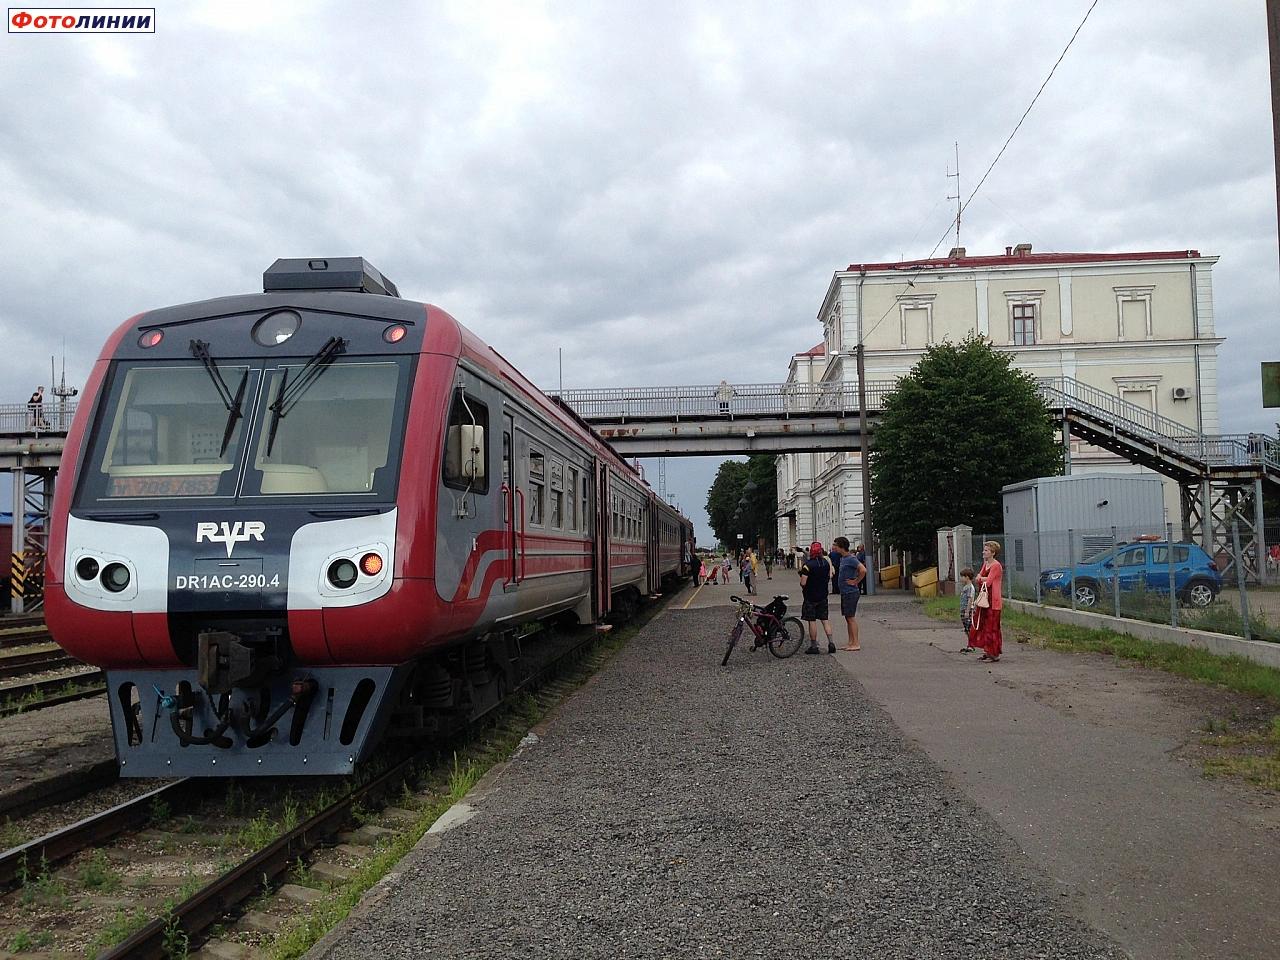 Вид платформы с пассажирским поездом